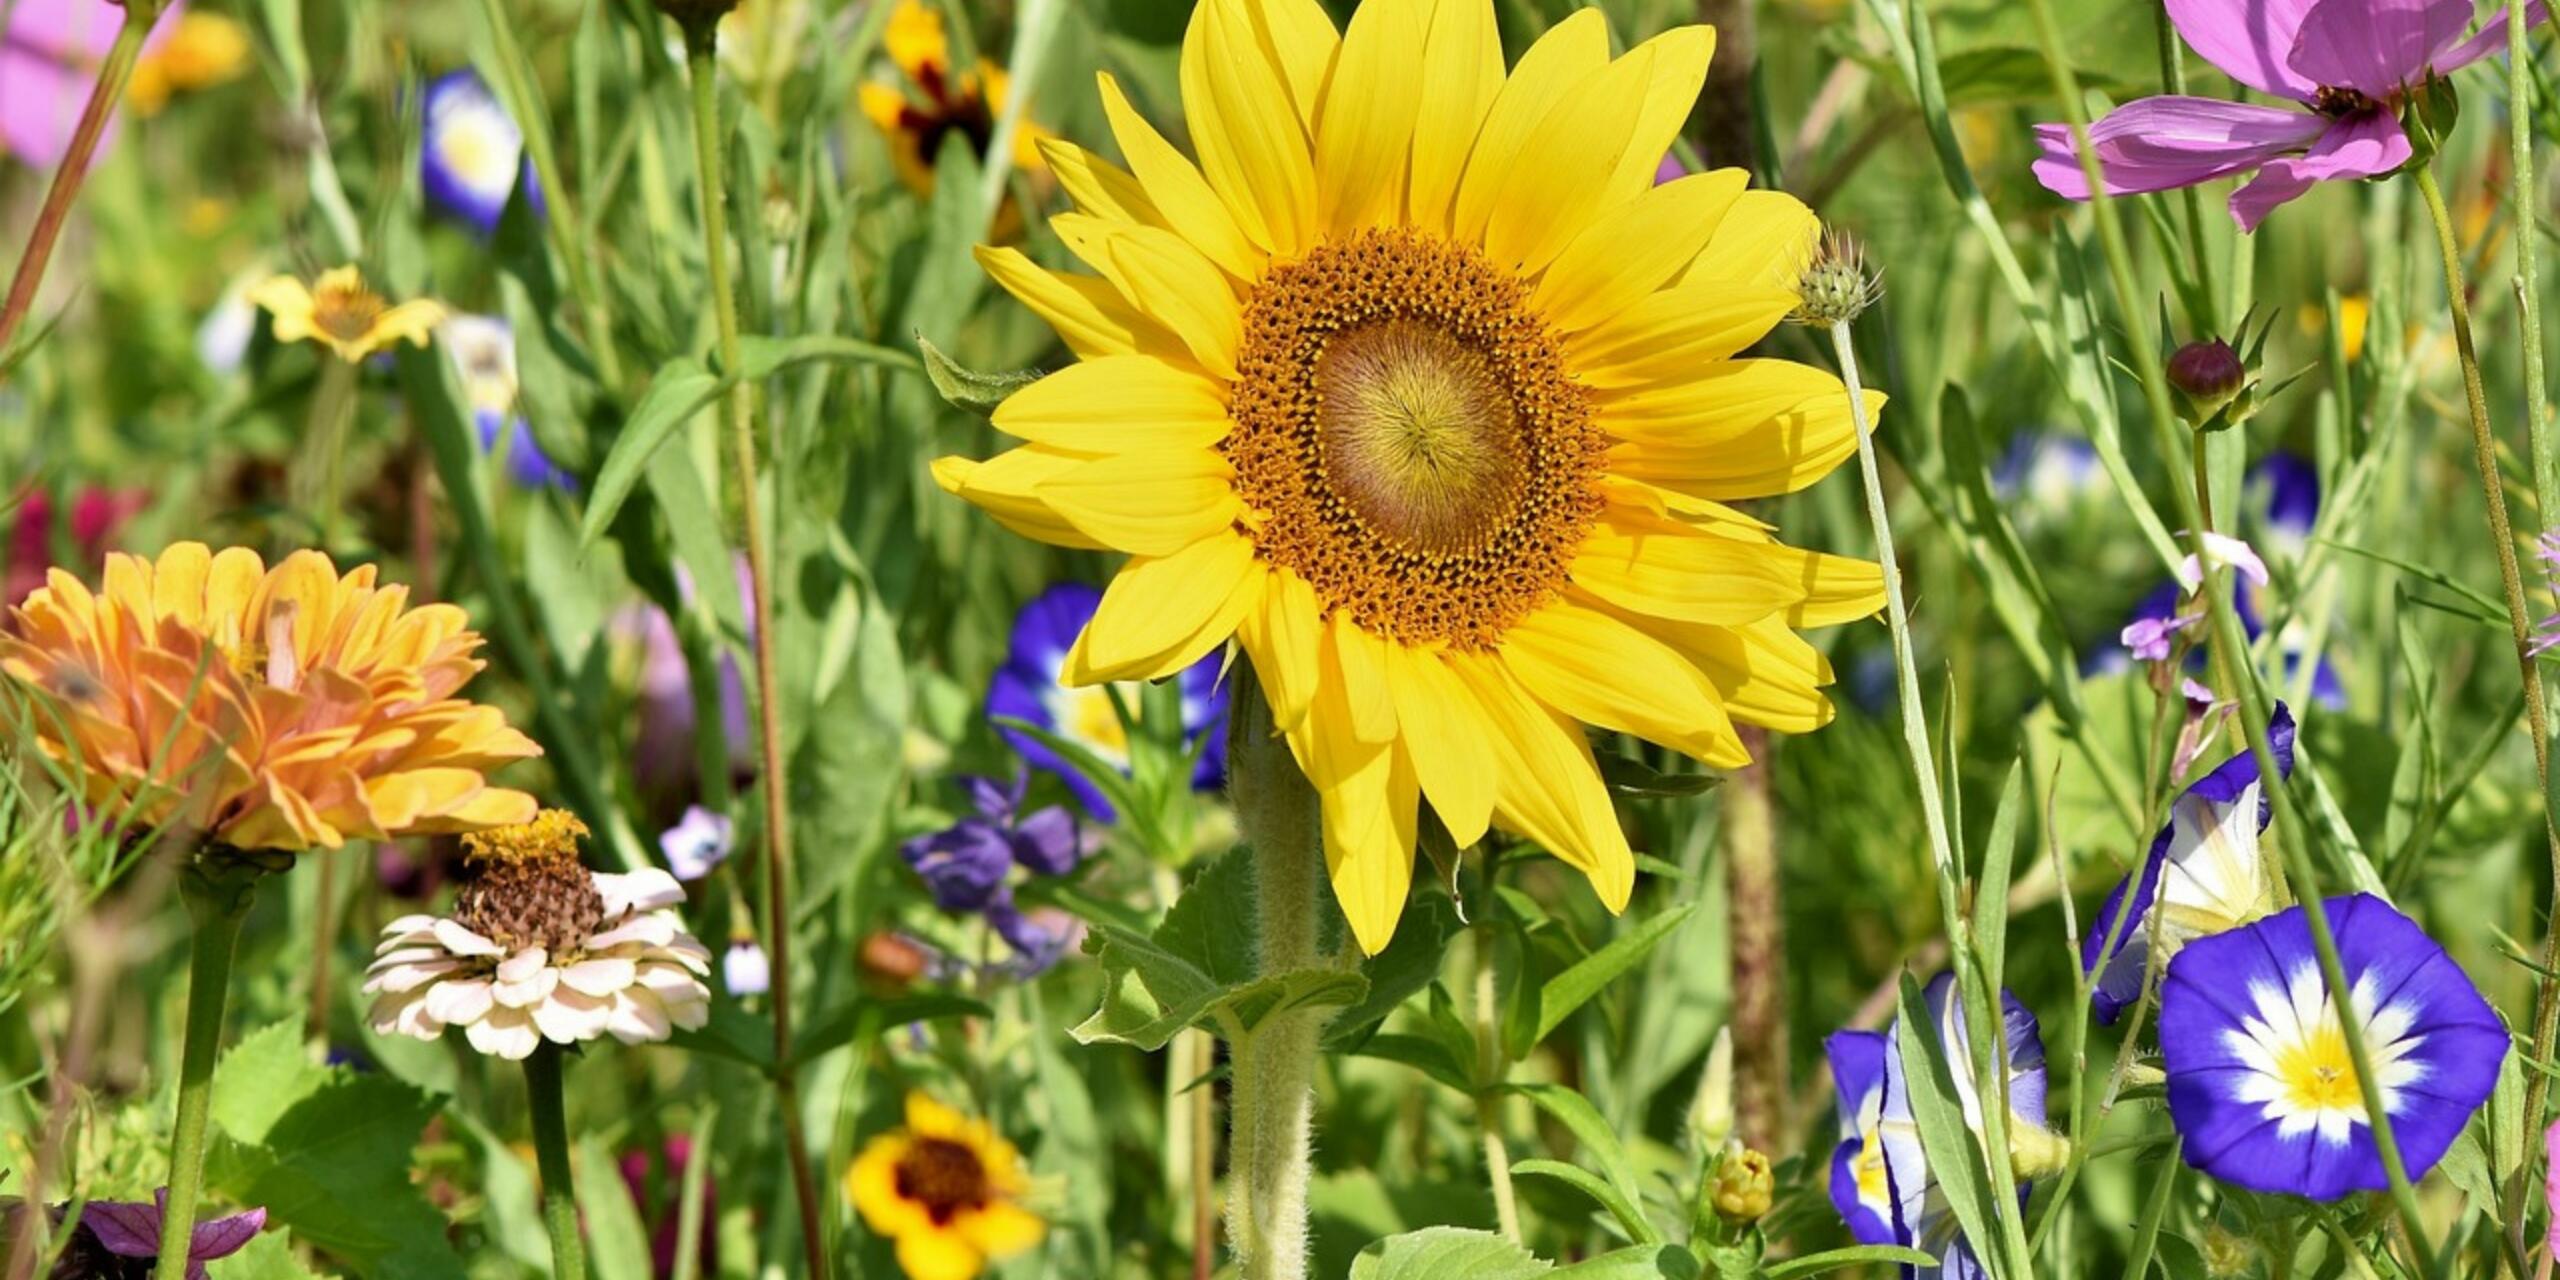 5 Best Flowering Plants To Buy In Summer